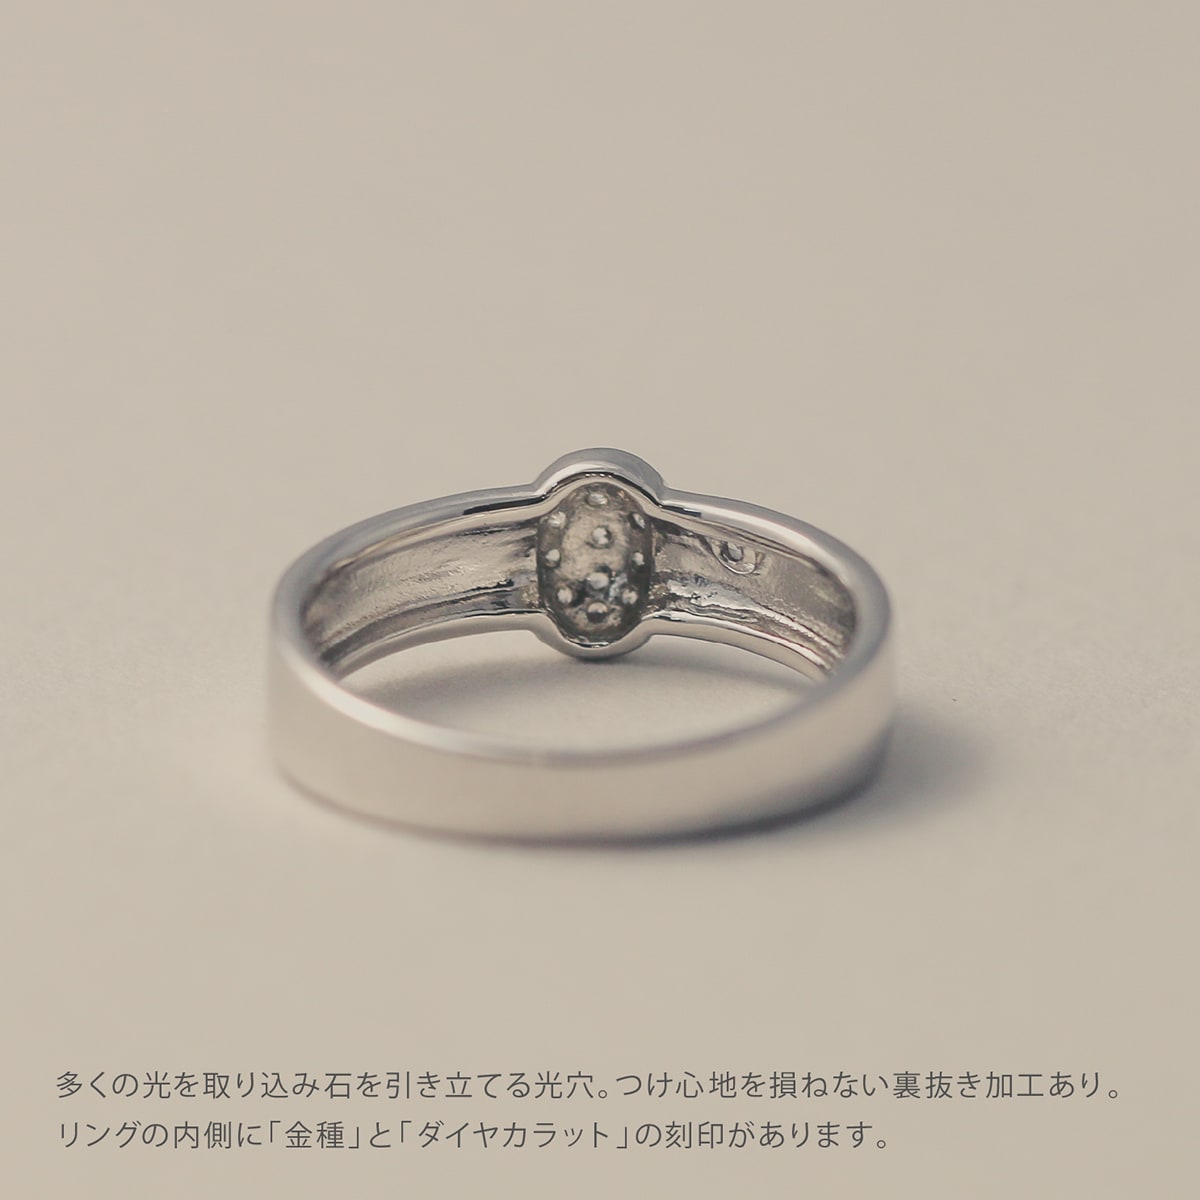 パヴェ ダイヤモンドリング | 15815 – cococaru